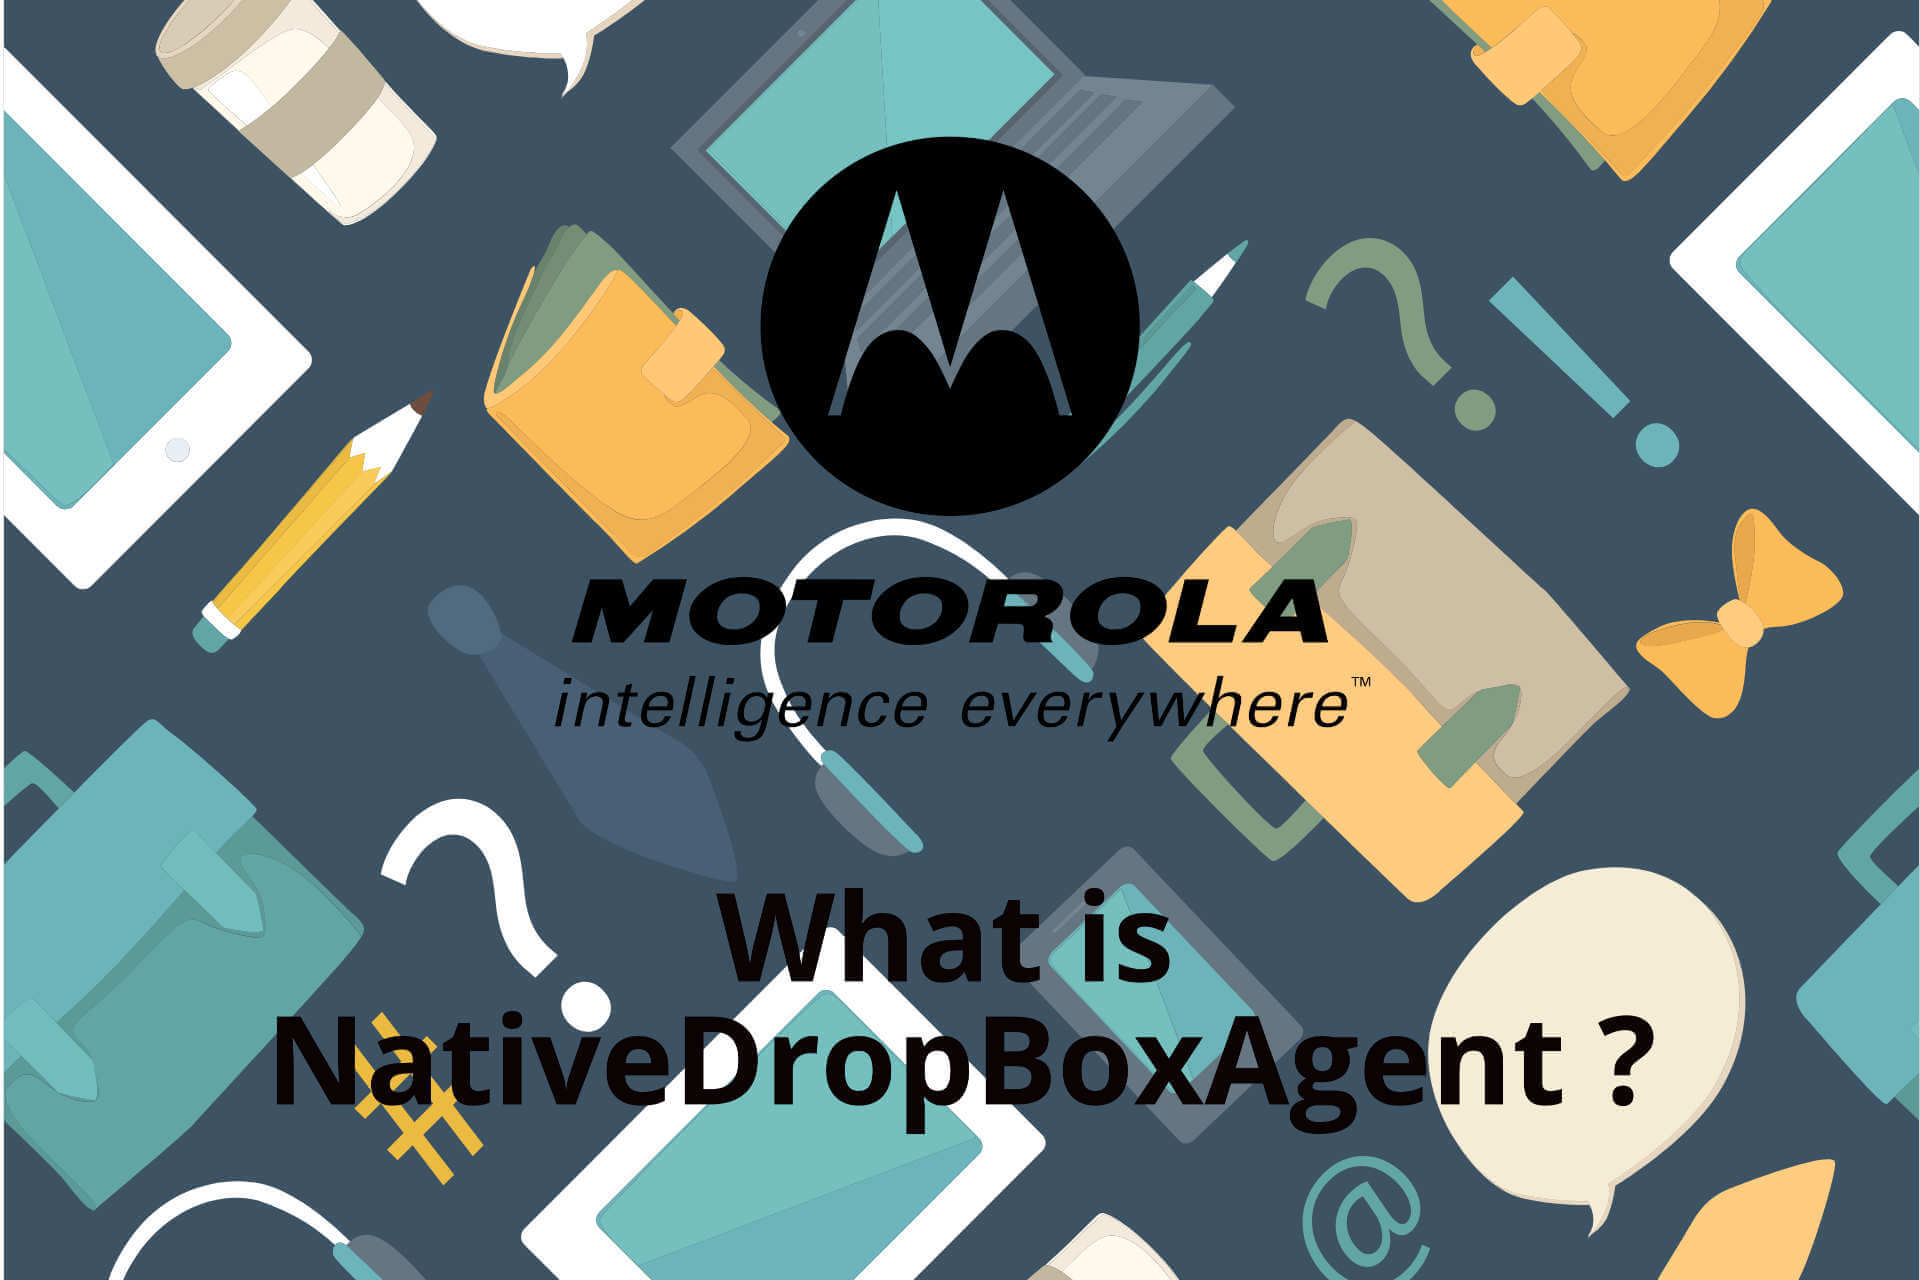 ¿Qué es NativeDropBoxAgent?